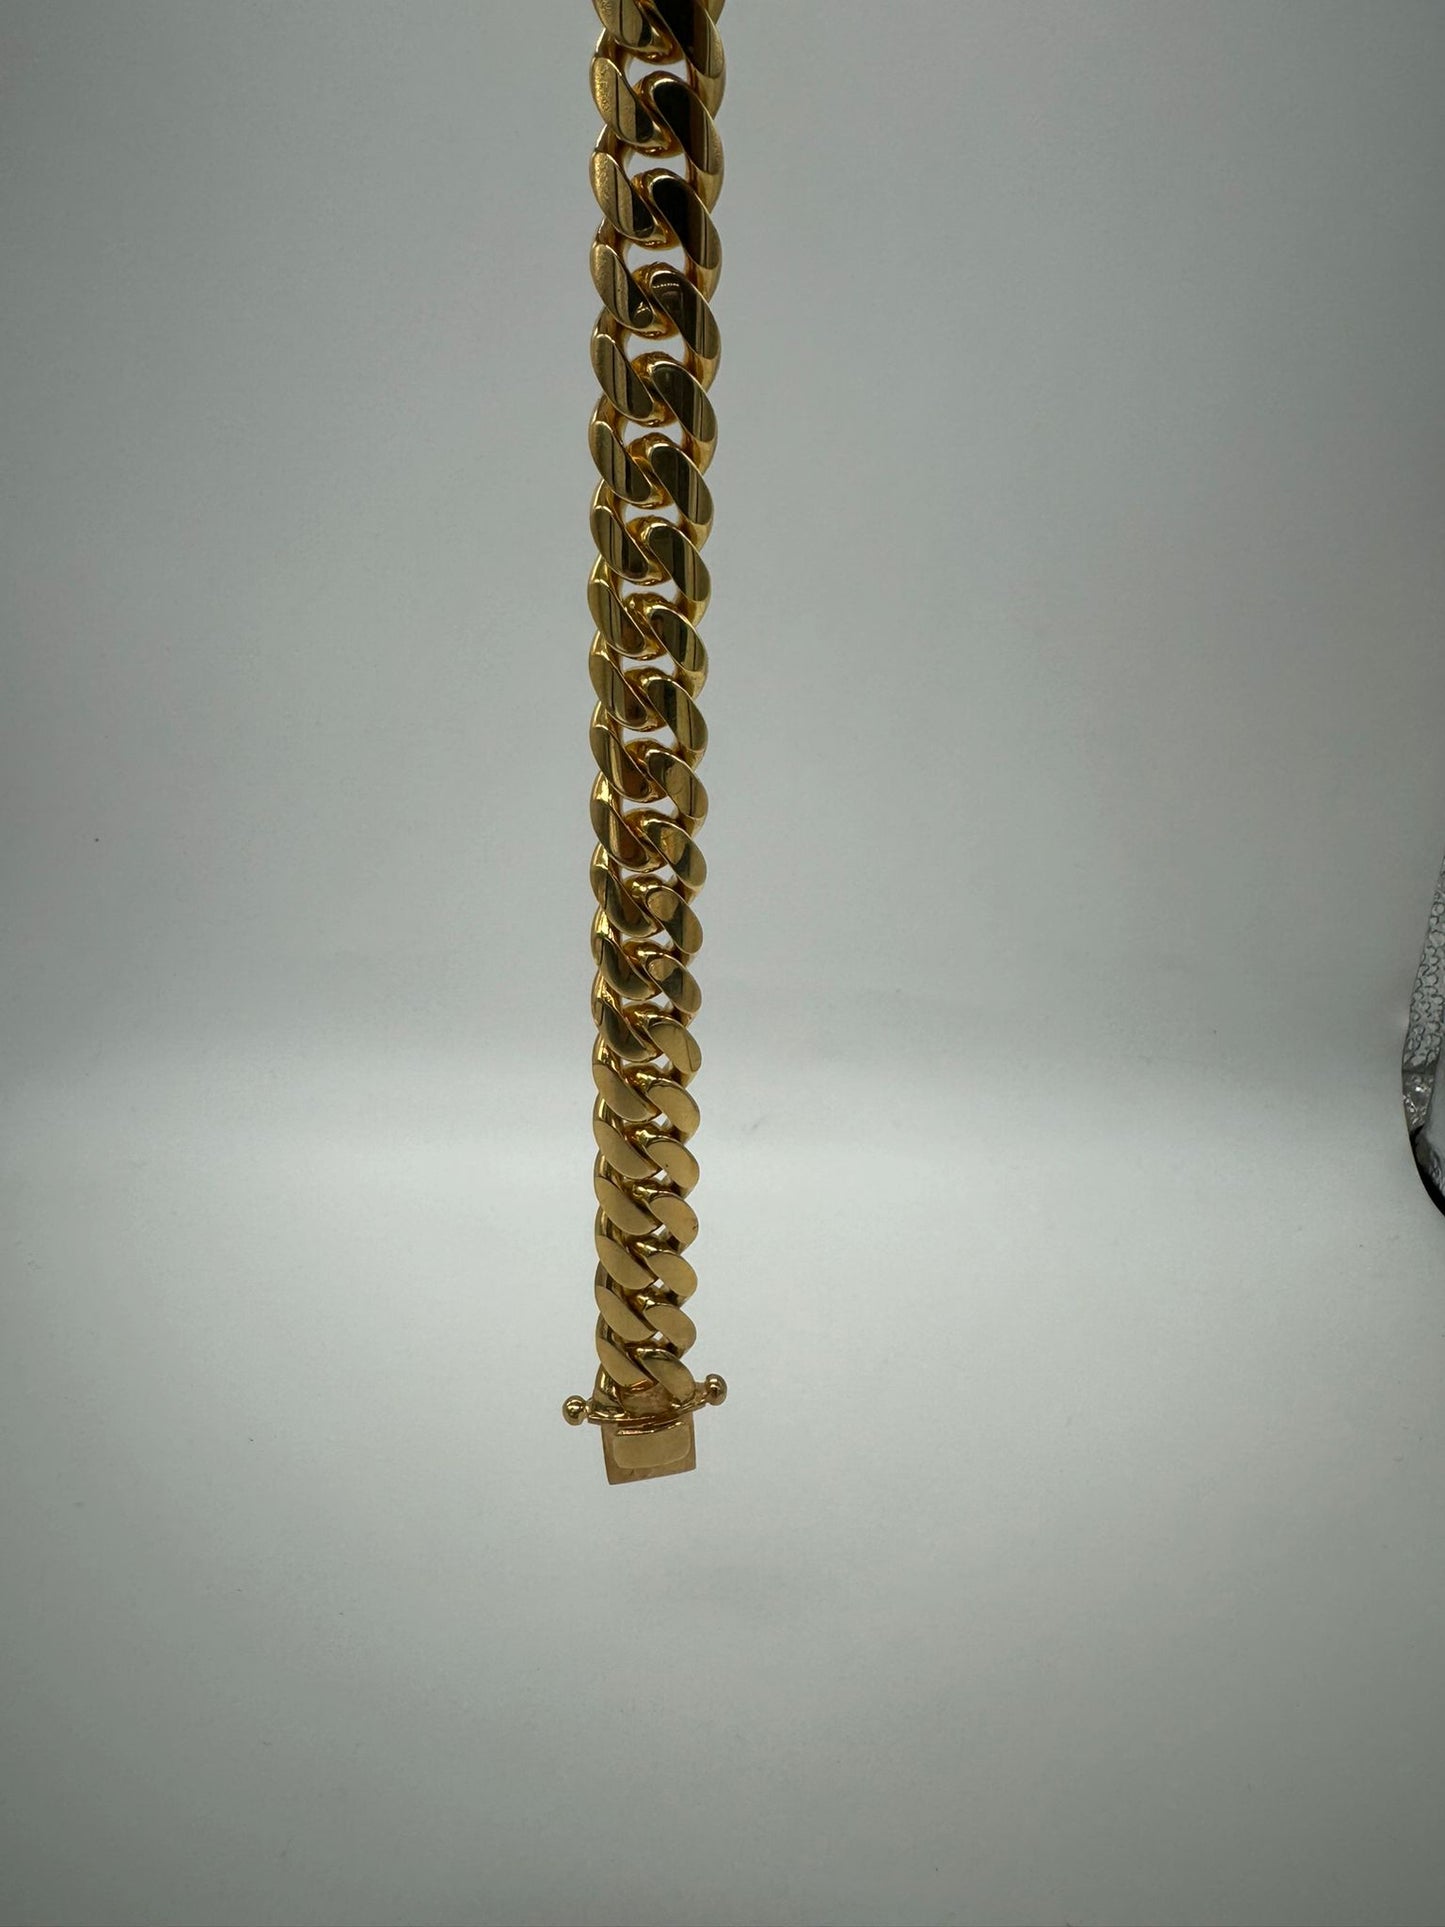 Raffle Ticket | Win: 10k gold 100g Cuban Link bracelet, Diamond Earrings, or $100 Store credit